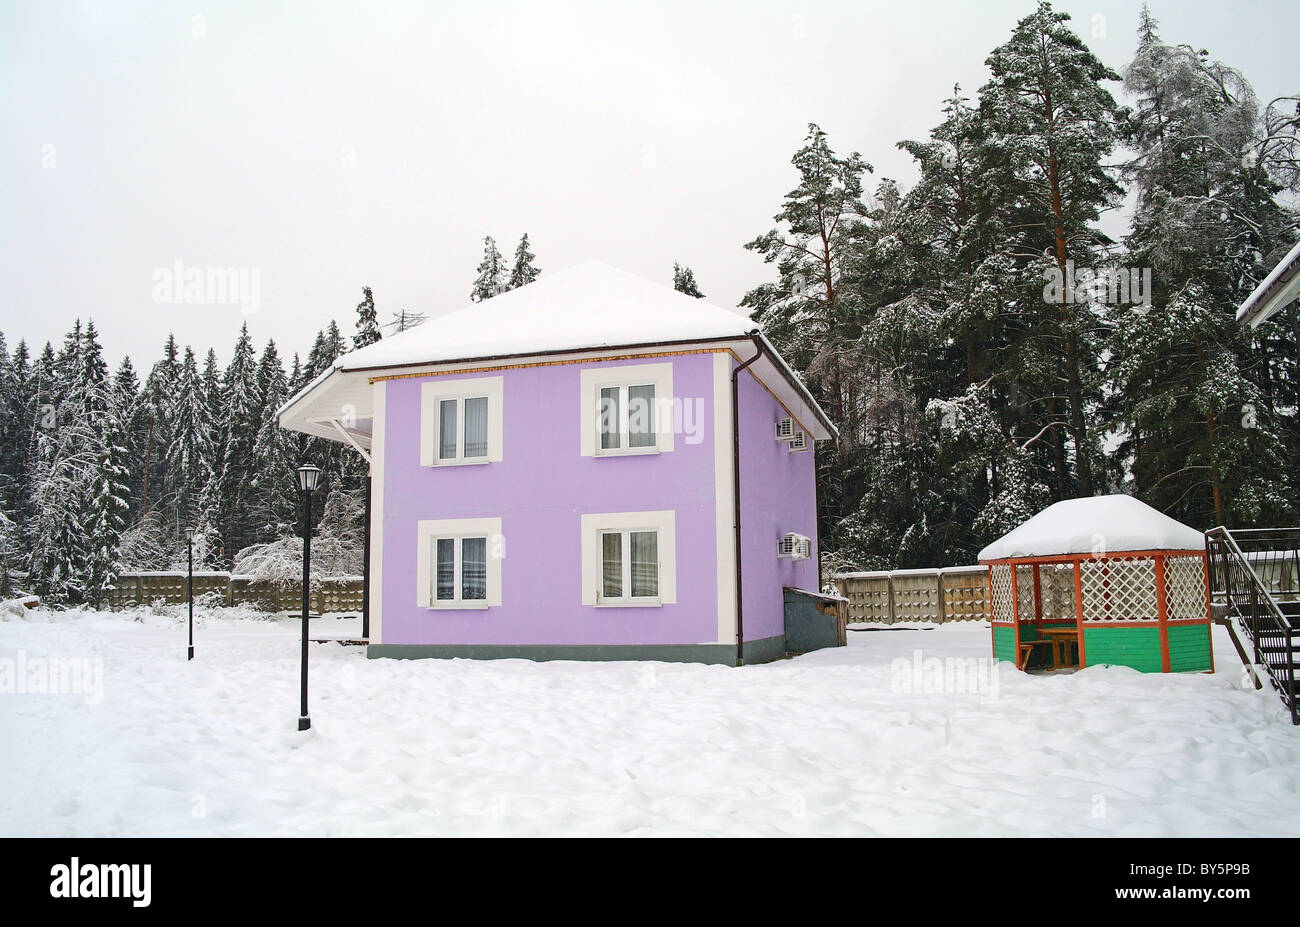 Das kleine Haus und Laube von Pension über ein Tannenwald im Winter in ein Schneefall, Moscow Region, Russland Stockfoto